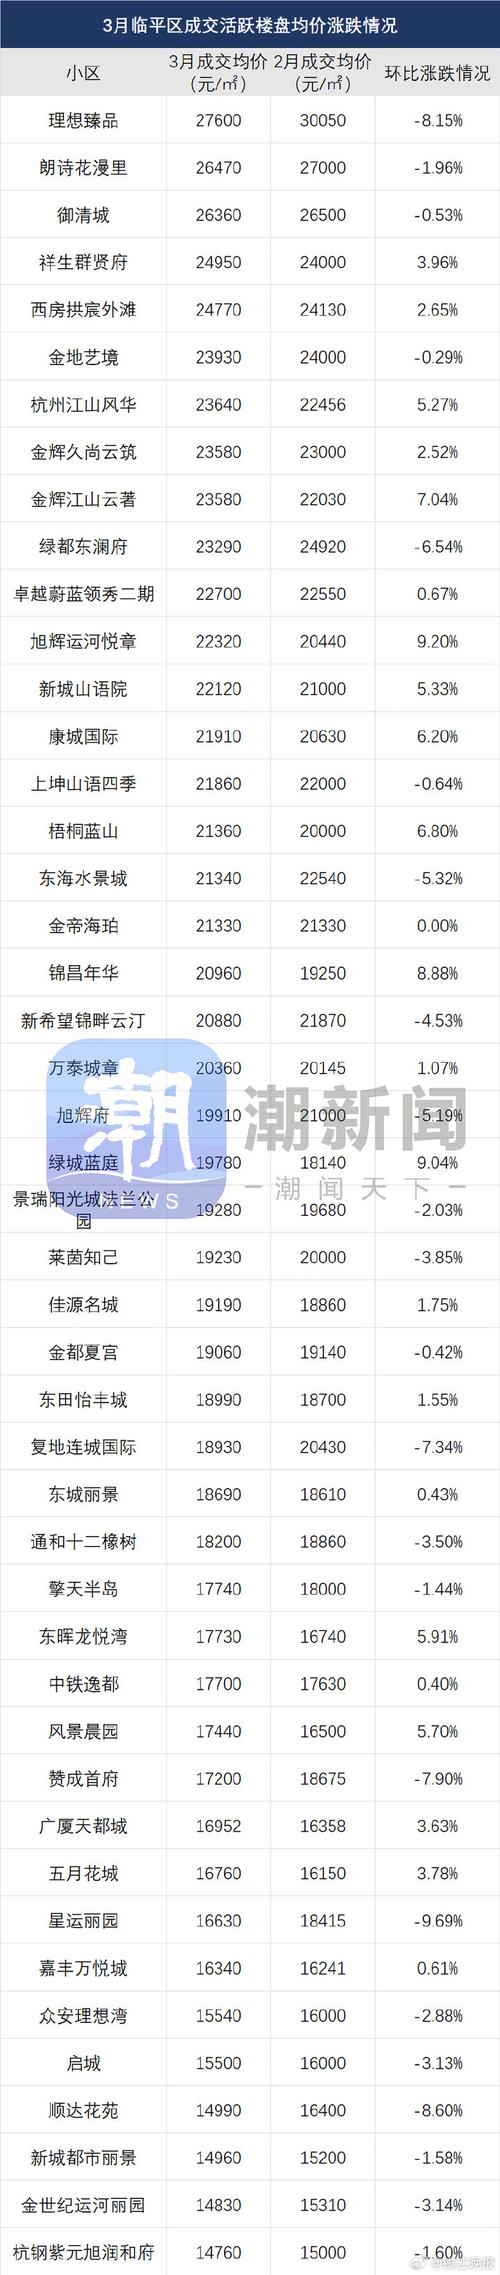 杭州最新二手房价涨跌榜出炉